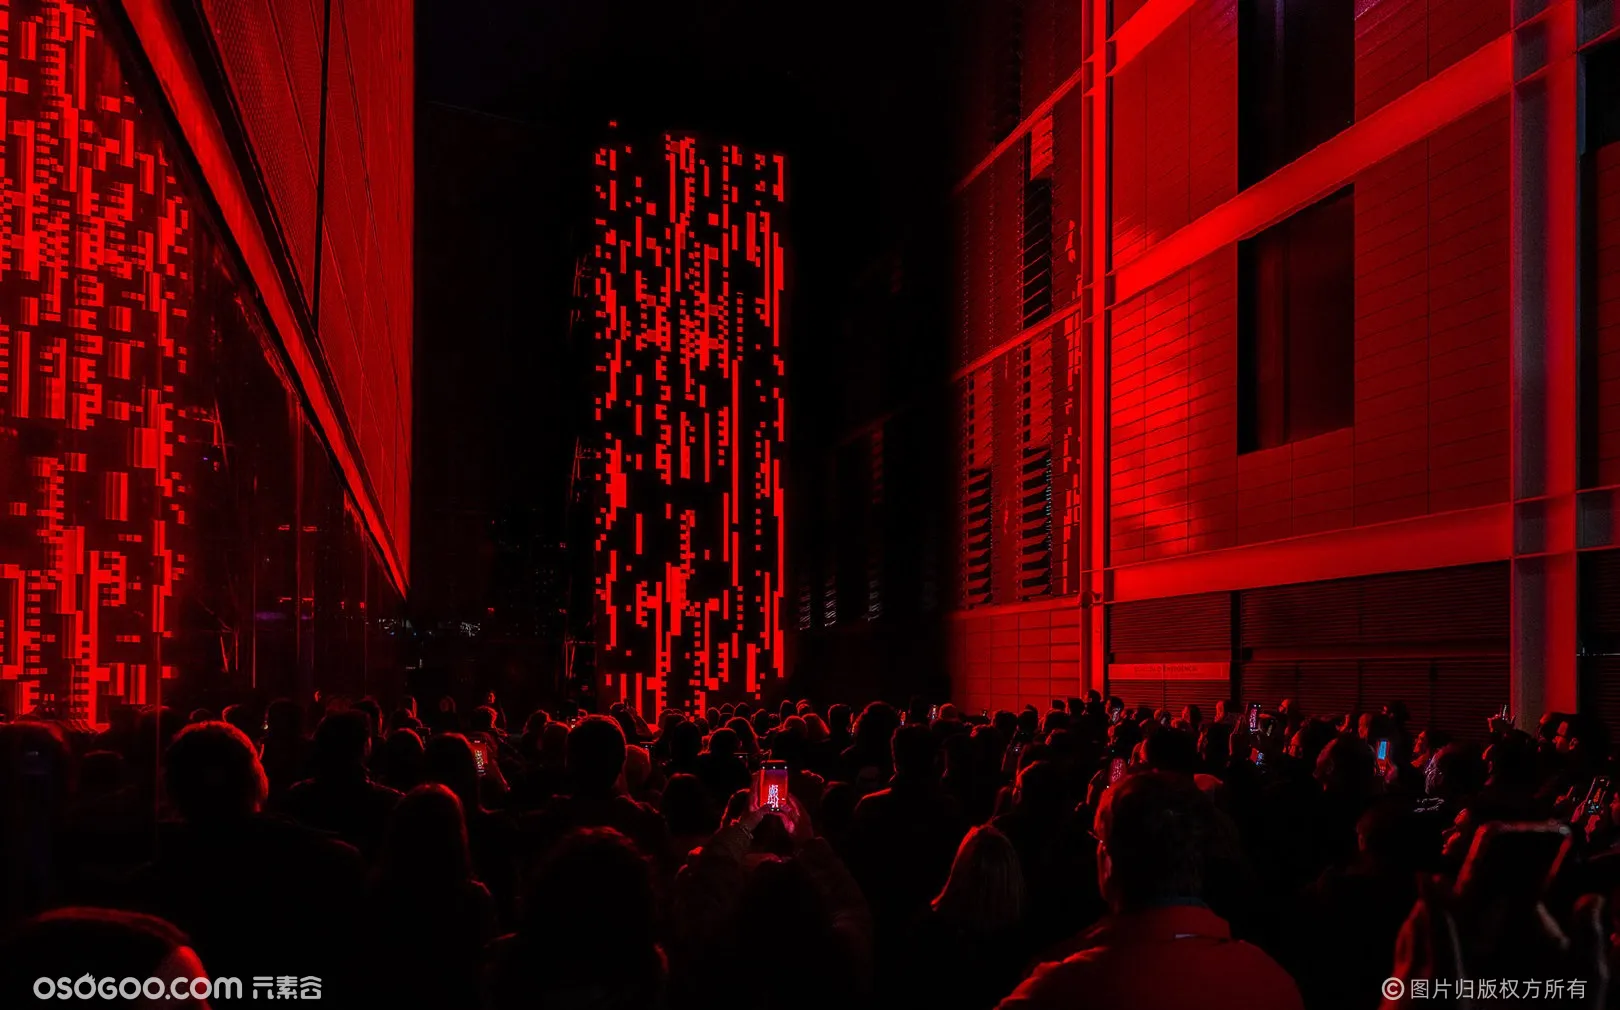 巴塞罗那灯光艺术节-巨型多媒体装置《MONOLITH》